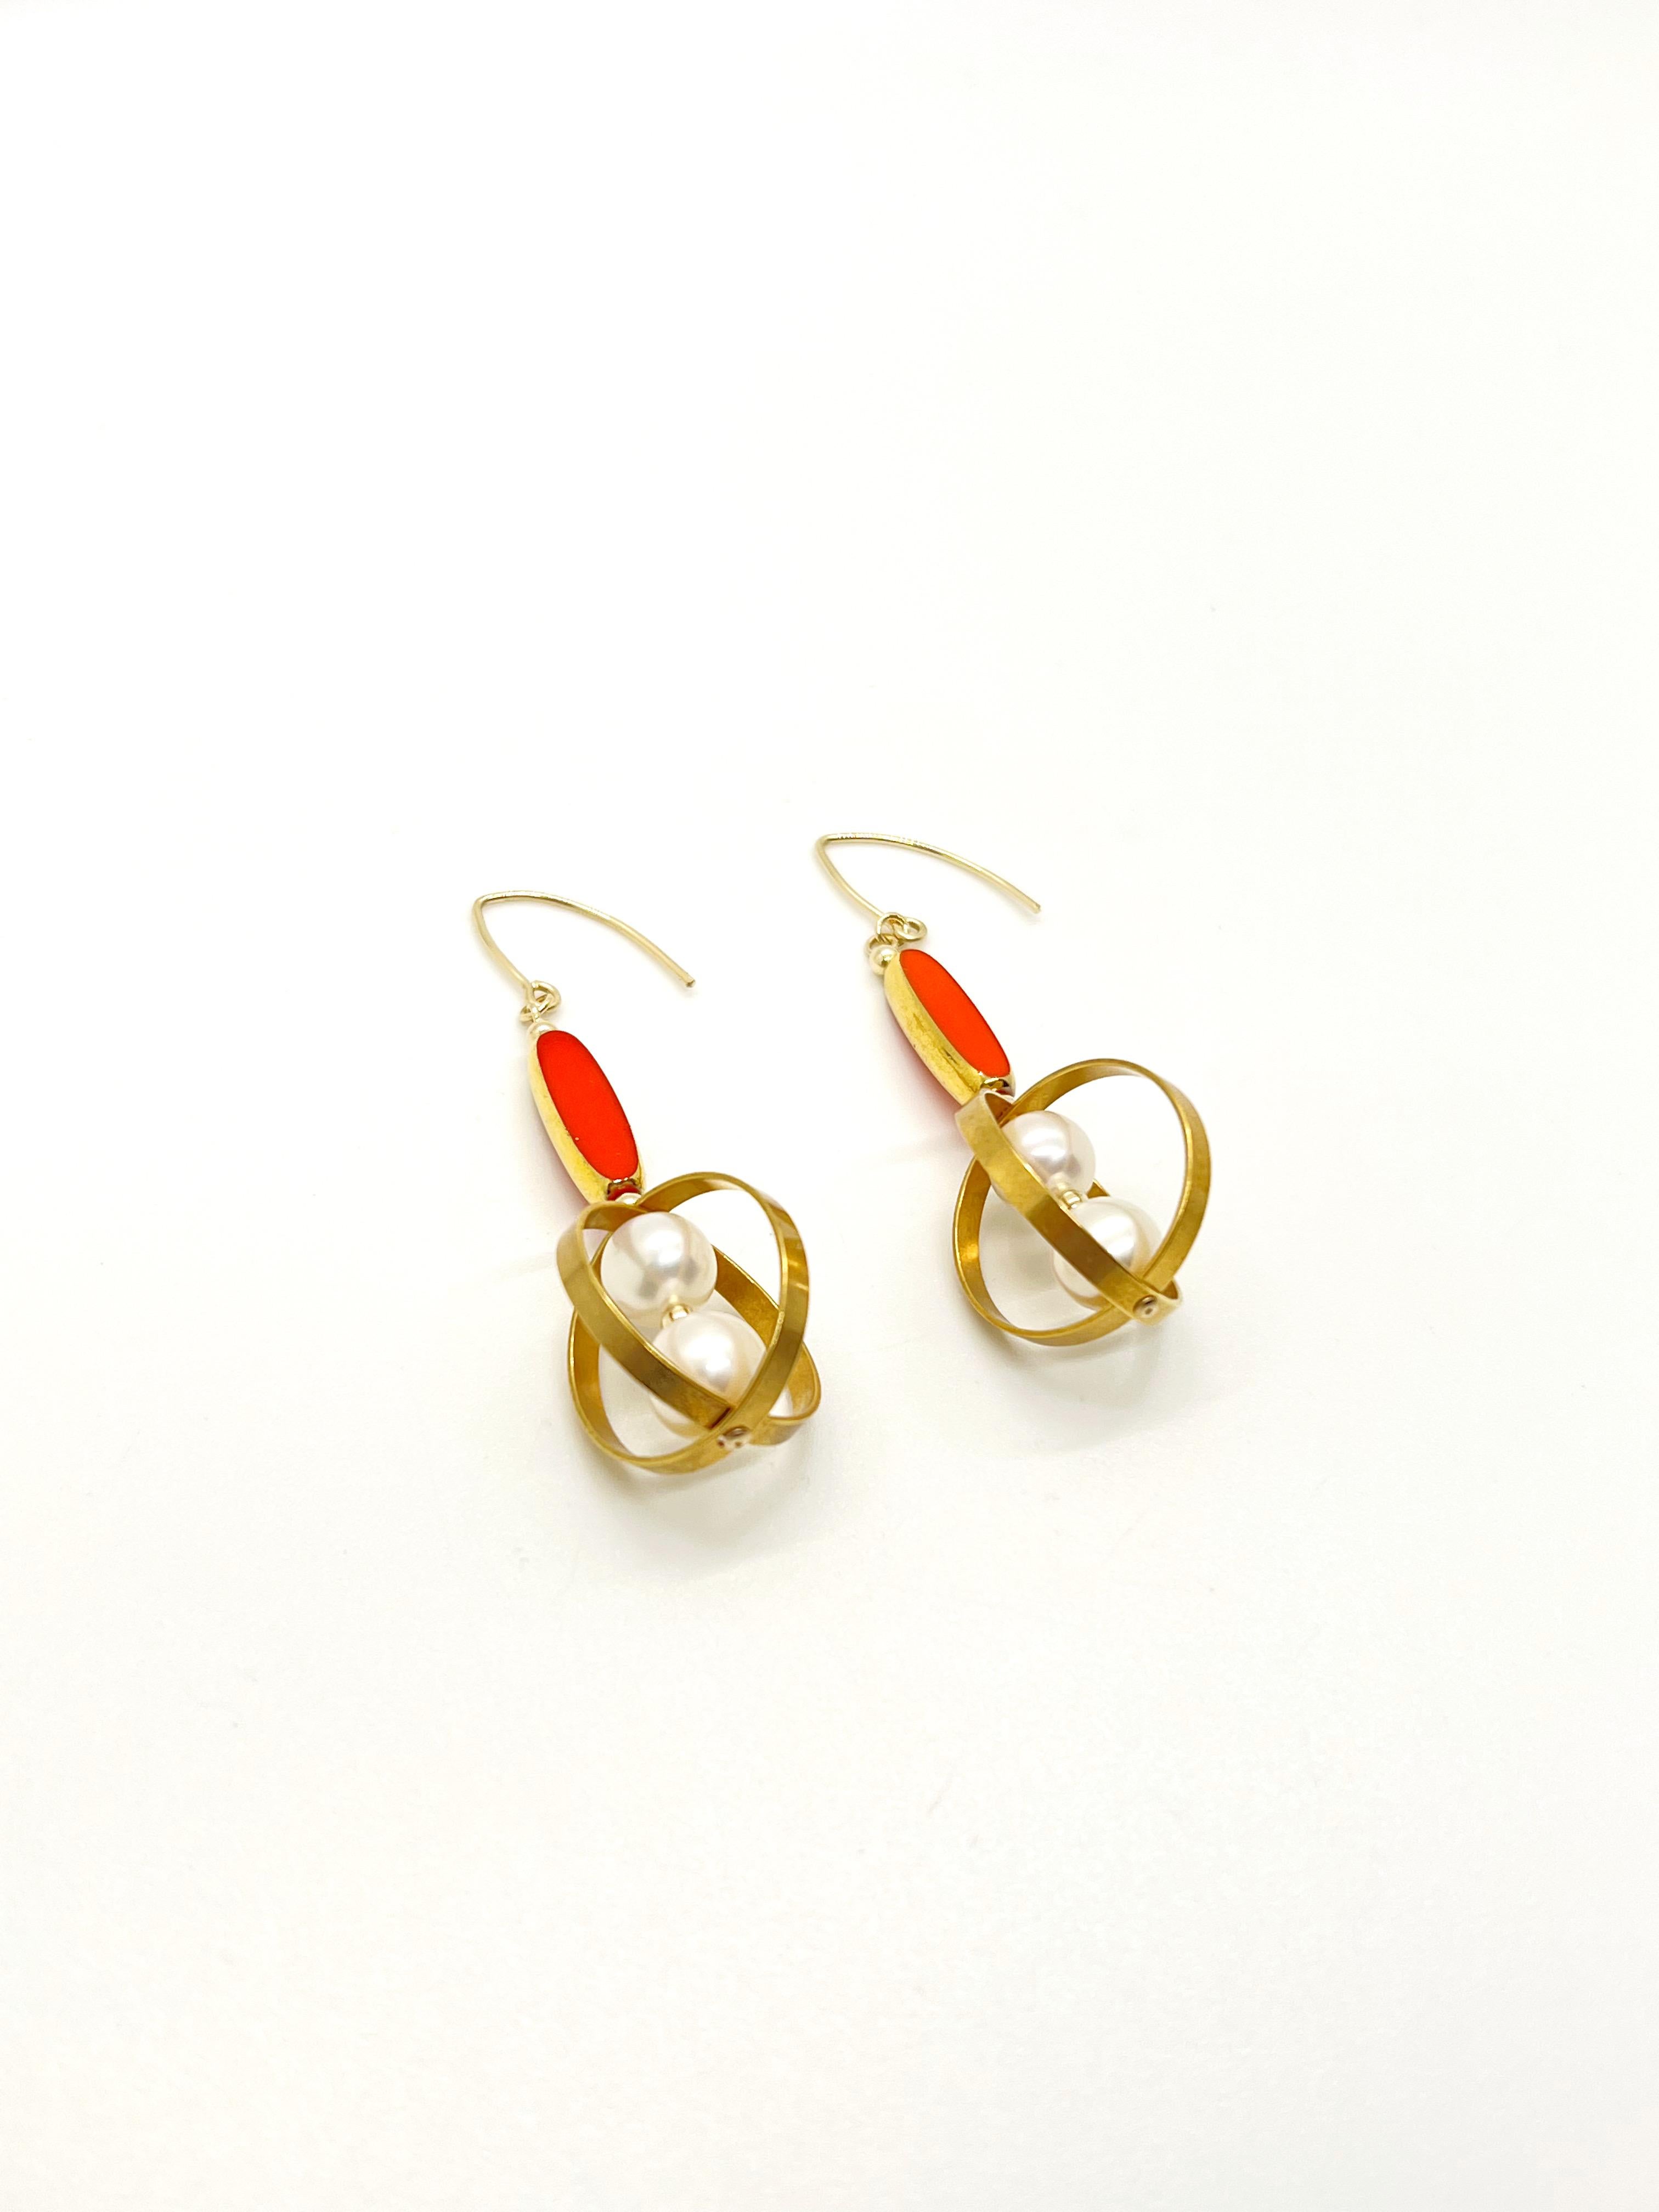 Diese Ohrringe werden auf Bestellung gefertigt.

Diese Ohrringe bestehen aus deutschen Vintage-Glasperlen, die mit 24 Karat Gold umrandet sind. Sie ist mit Süßwasserperlen besetzt, die in einen geometrischen Orbitalrahmen eingefasst sind.

Die mit